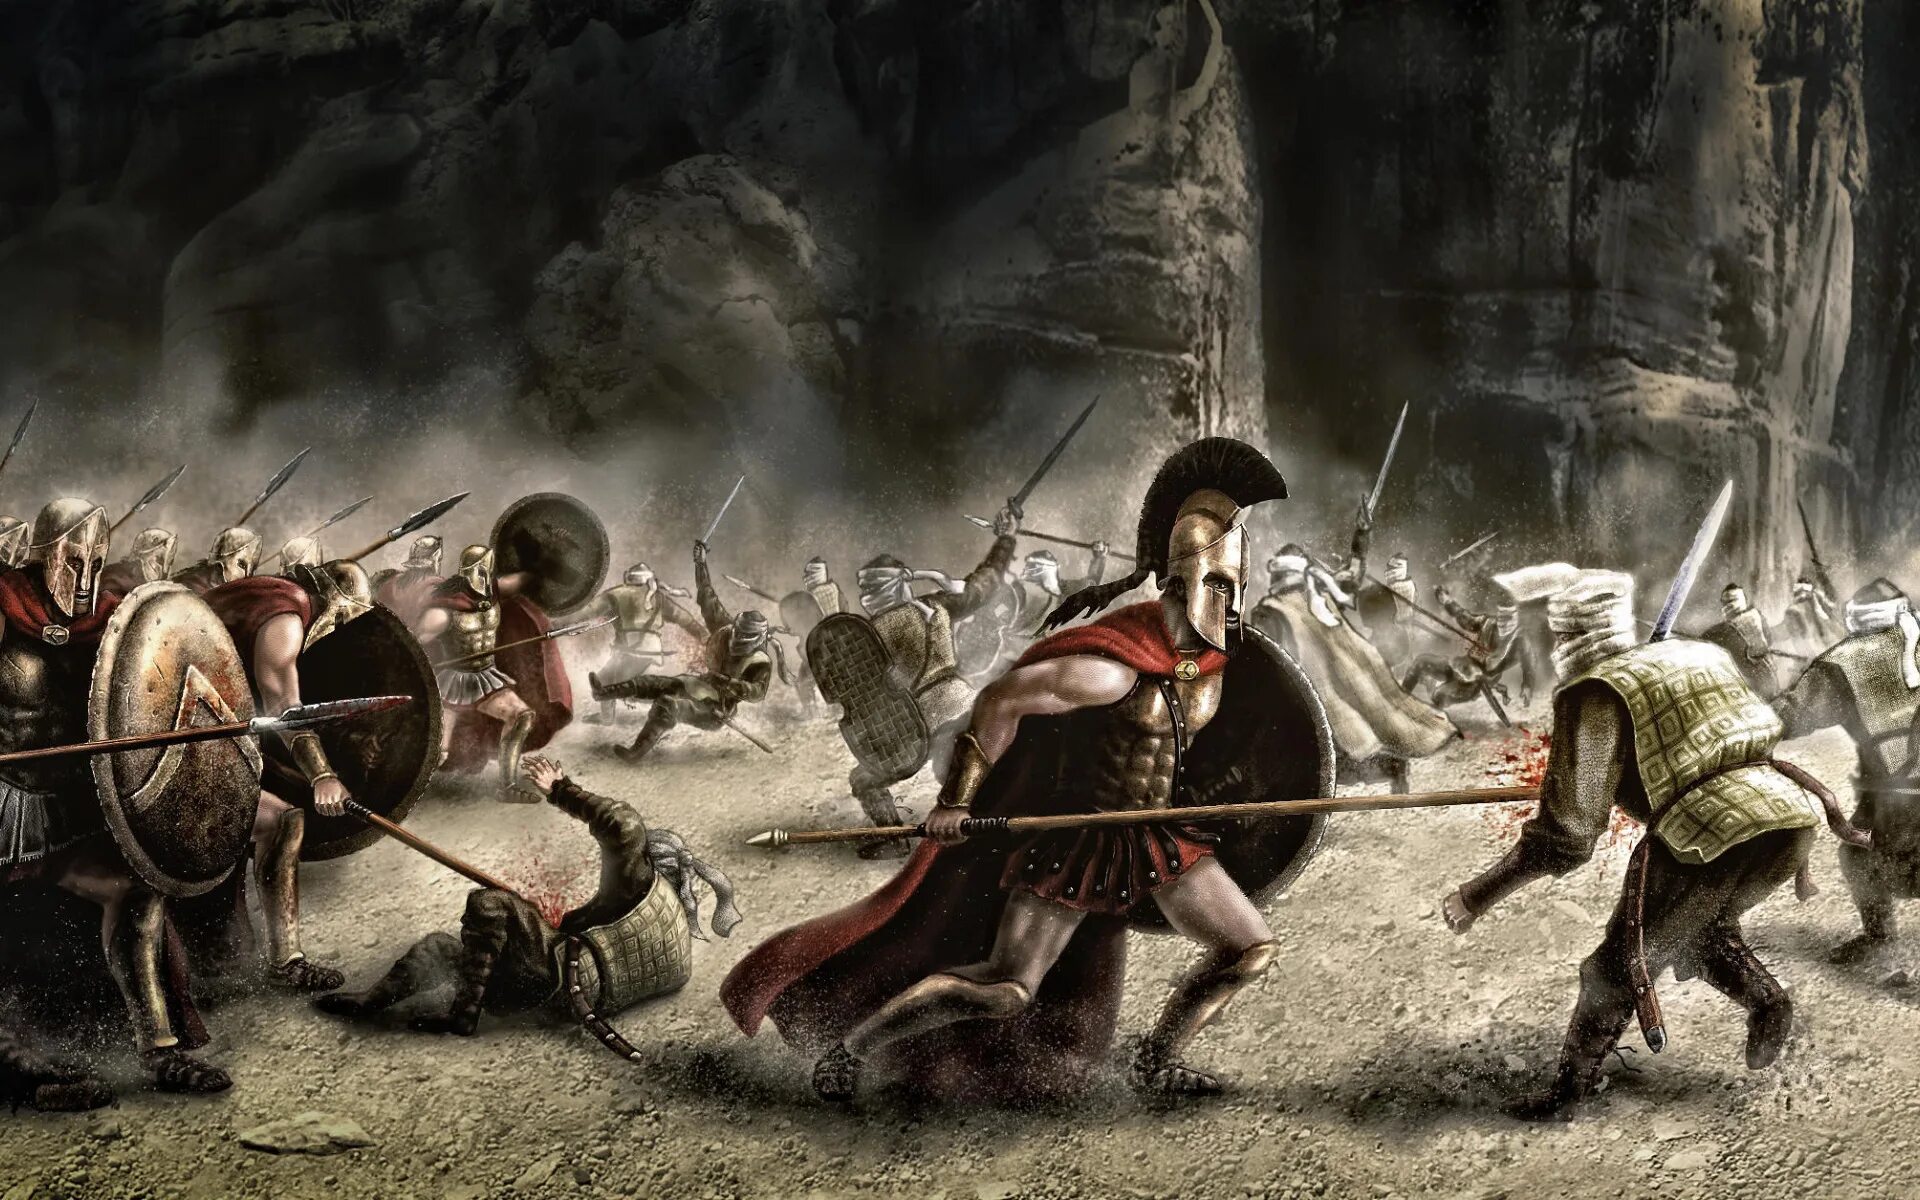 Самая мощная битва. Фермопильское сражение 300 спартанцев. 300 Спартанцев в Фермопилах. Армия персов 300 спартанцев. 300 Спартанцев бой.